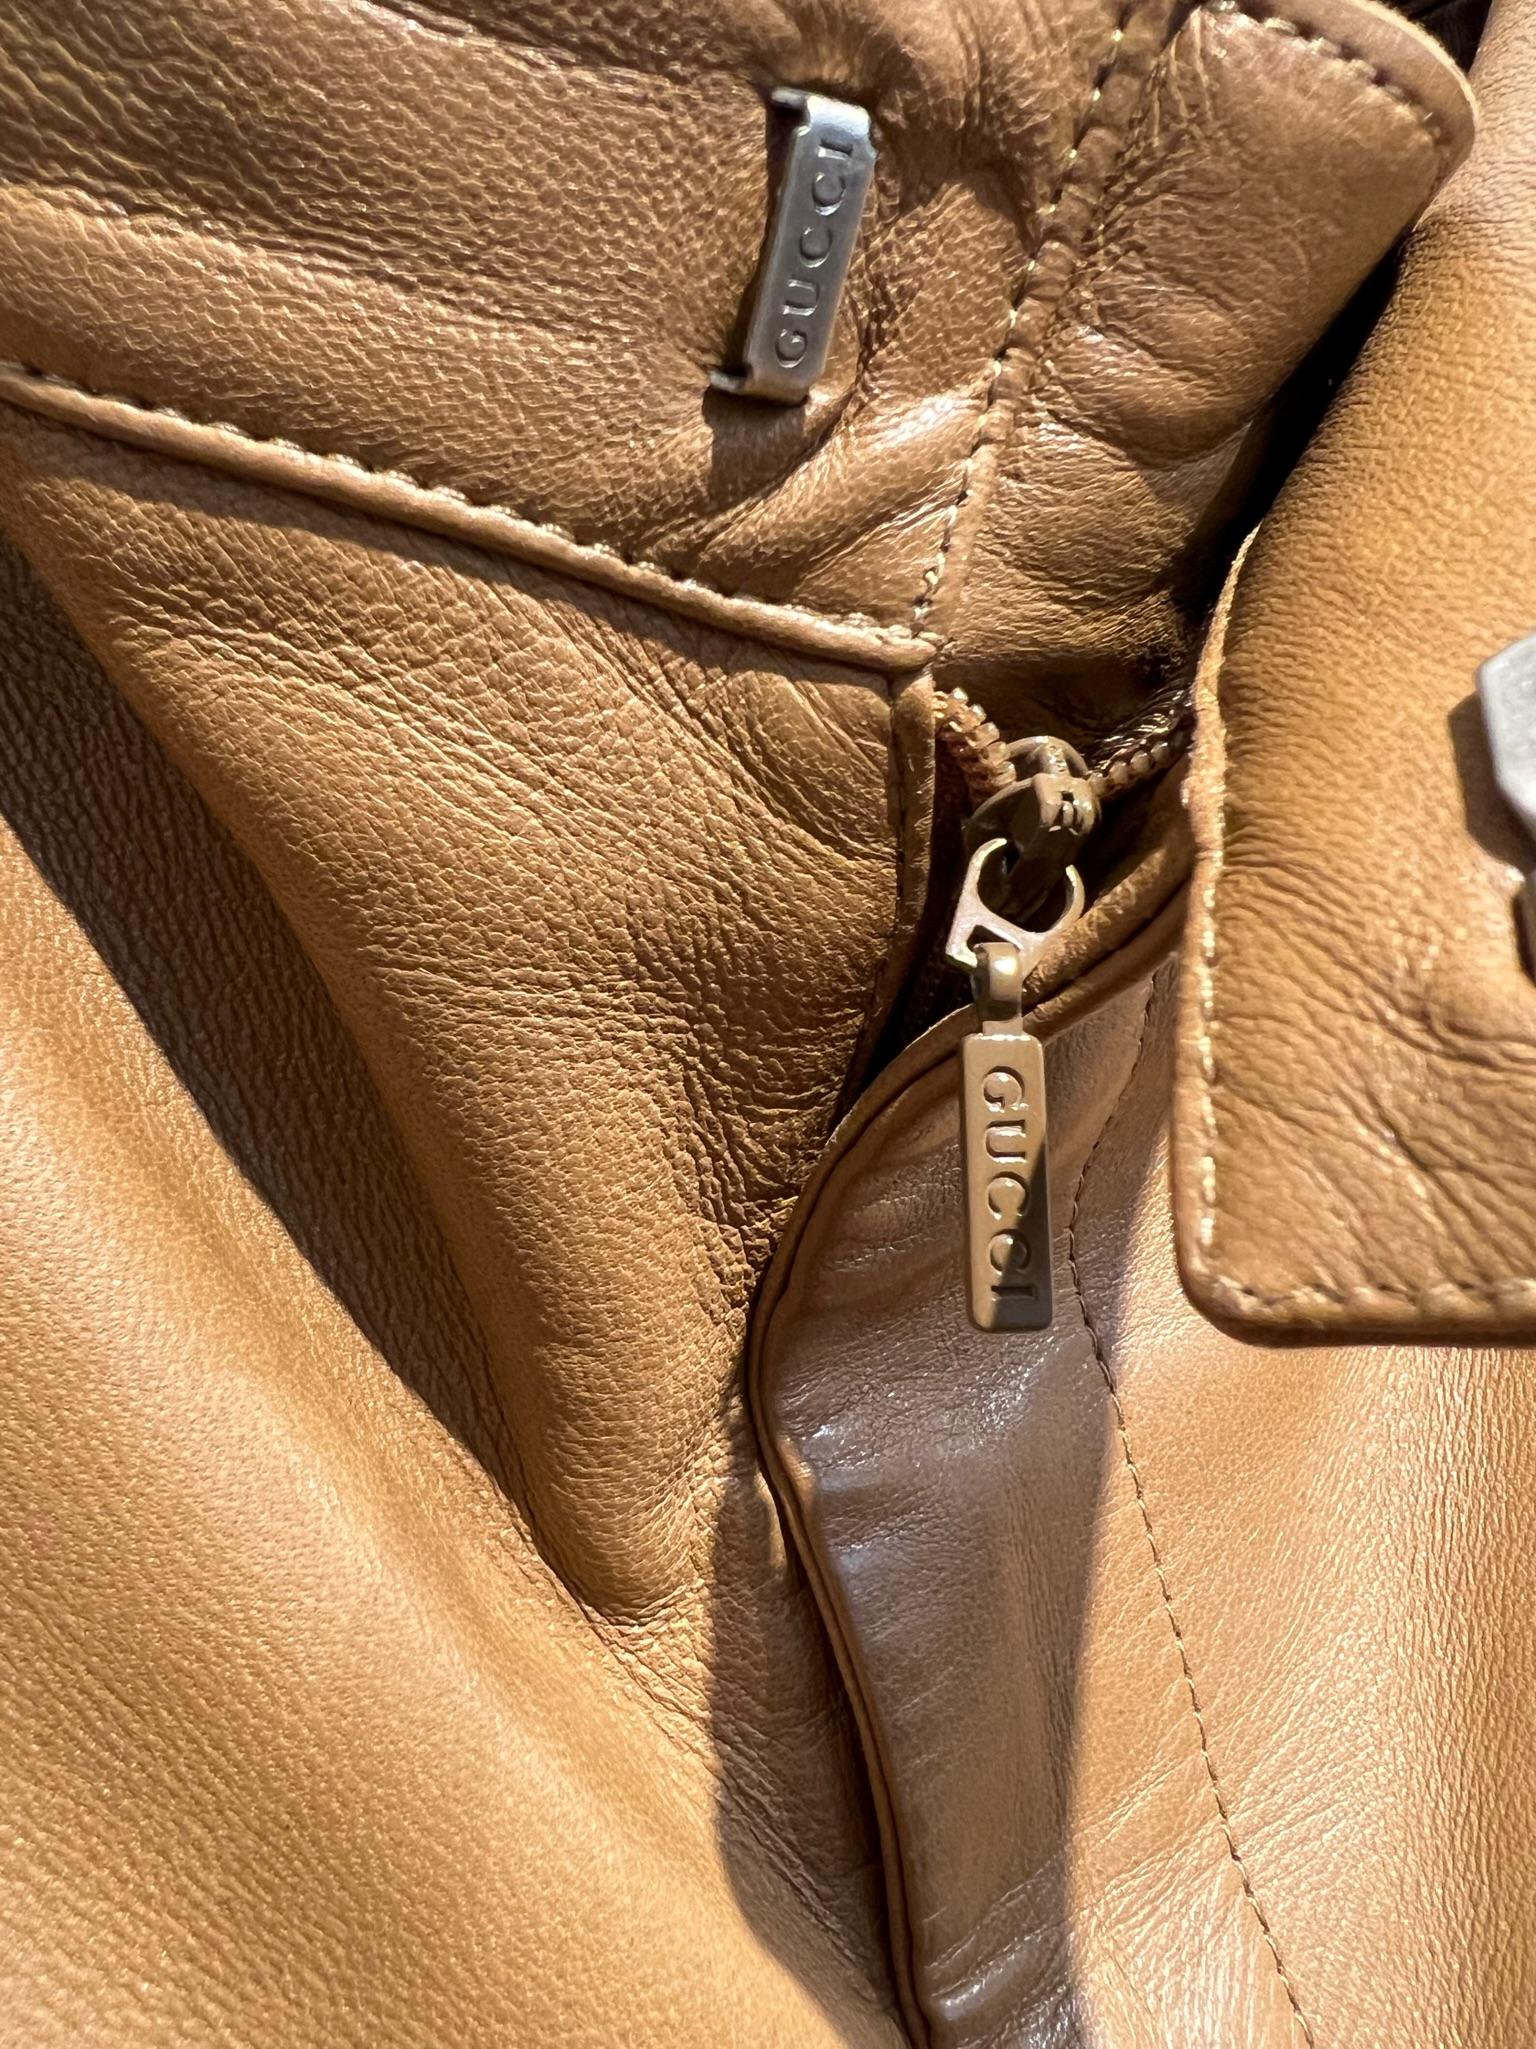 Diese in Italien geschneiderte Vintage-Lederhose erinnert an die Gucci Tom Ford Collection'S. Dieses vom Reiten inspirierte Modell hat zwei Vordertaschen und eine Gesäßtasche. 